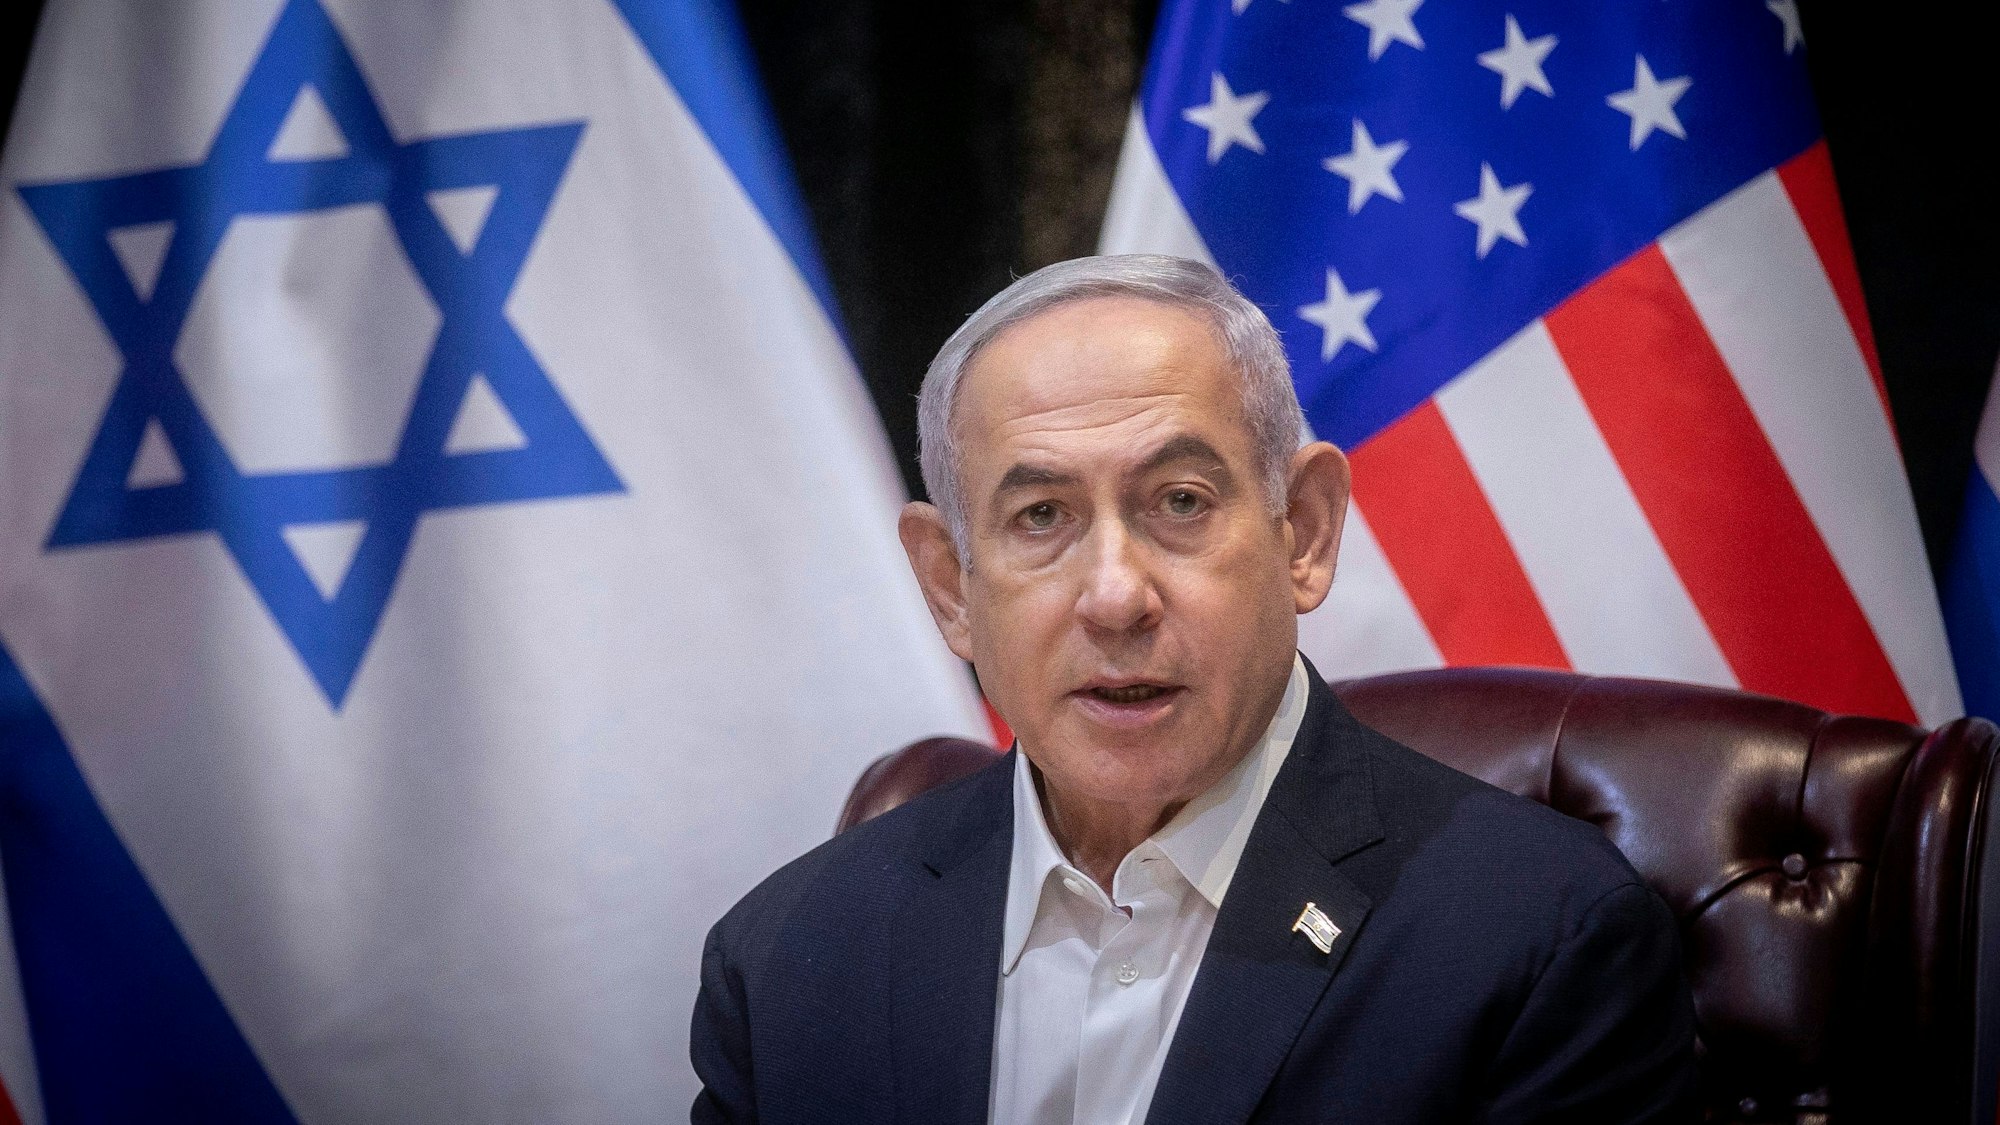 Israels Ministerpräsident Benjamin Netanjahu hatte wegen der Forderung des Weltsicherheitsrates nach einer sofortigen Waffenruhe im Gazastreifen eine geplante Reise einer israelischen Delegation in die USA abgesagt.